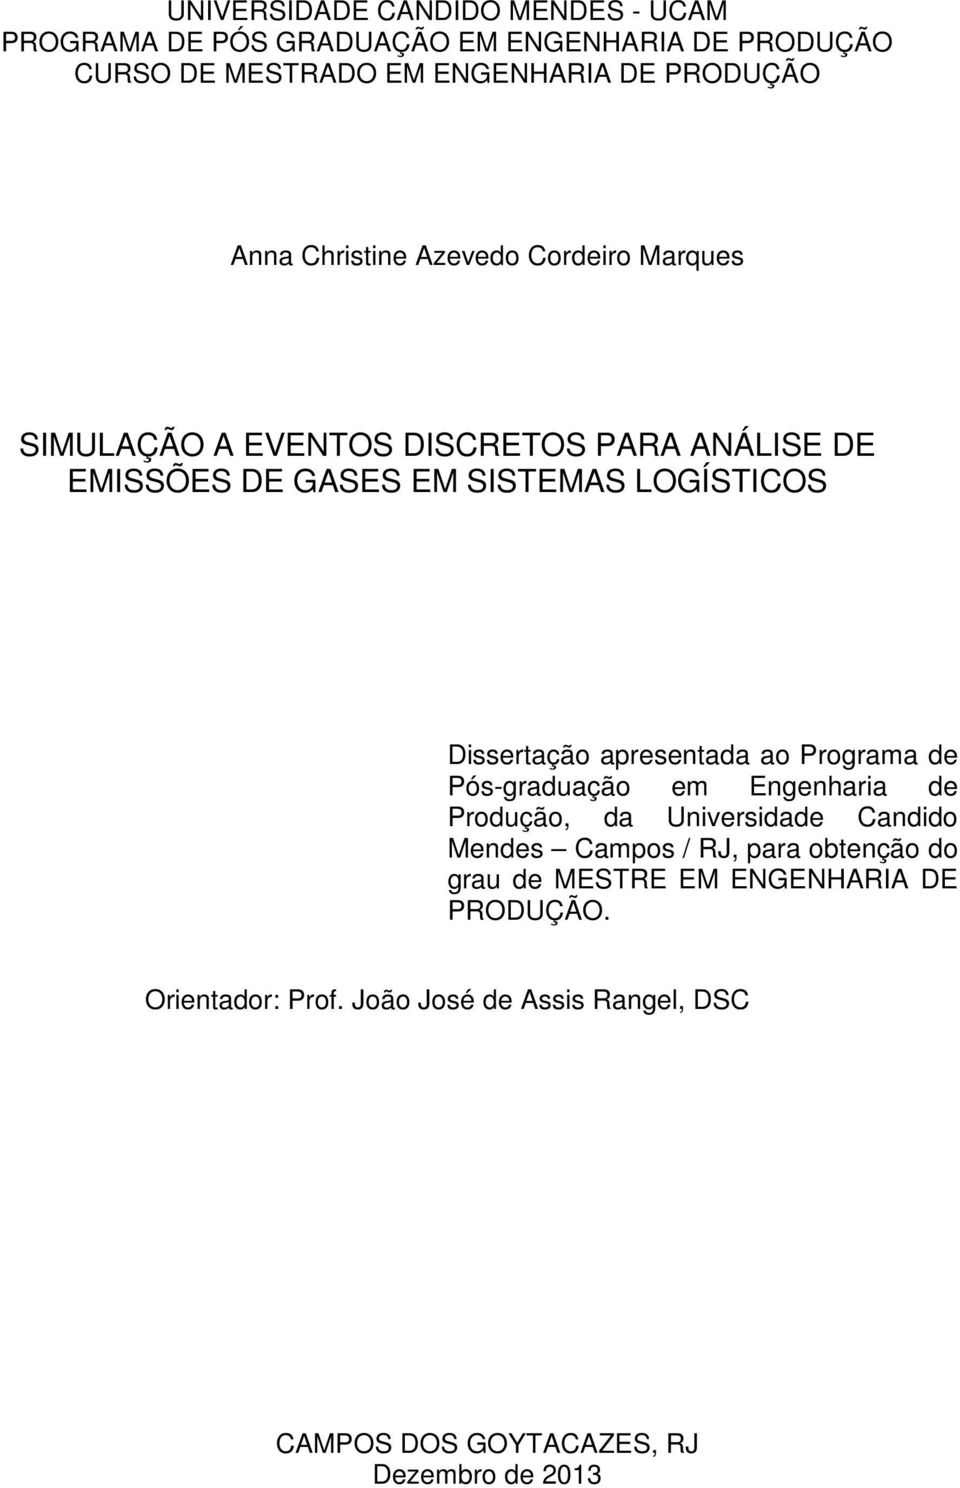 Dissertação apresentada ao Programa de Pós-graduação em Engenharia de Produção, da Universidade Candido Mendes Campos / RJ, para